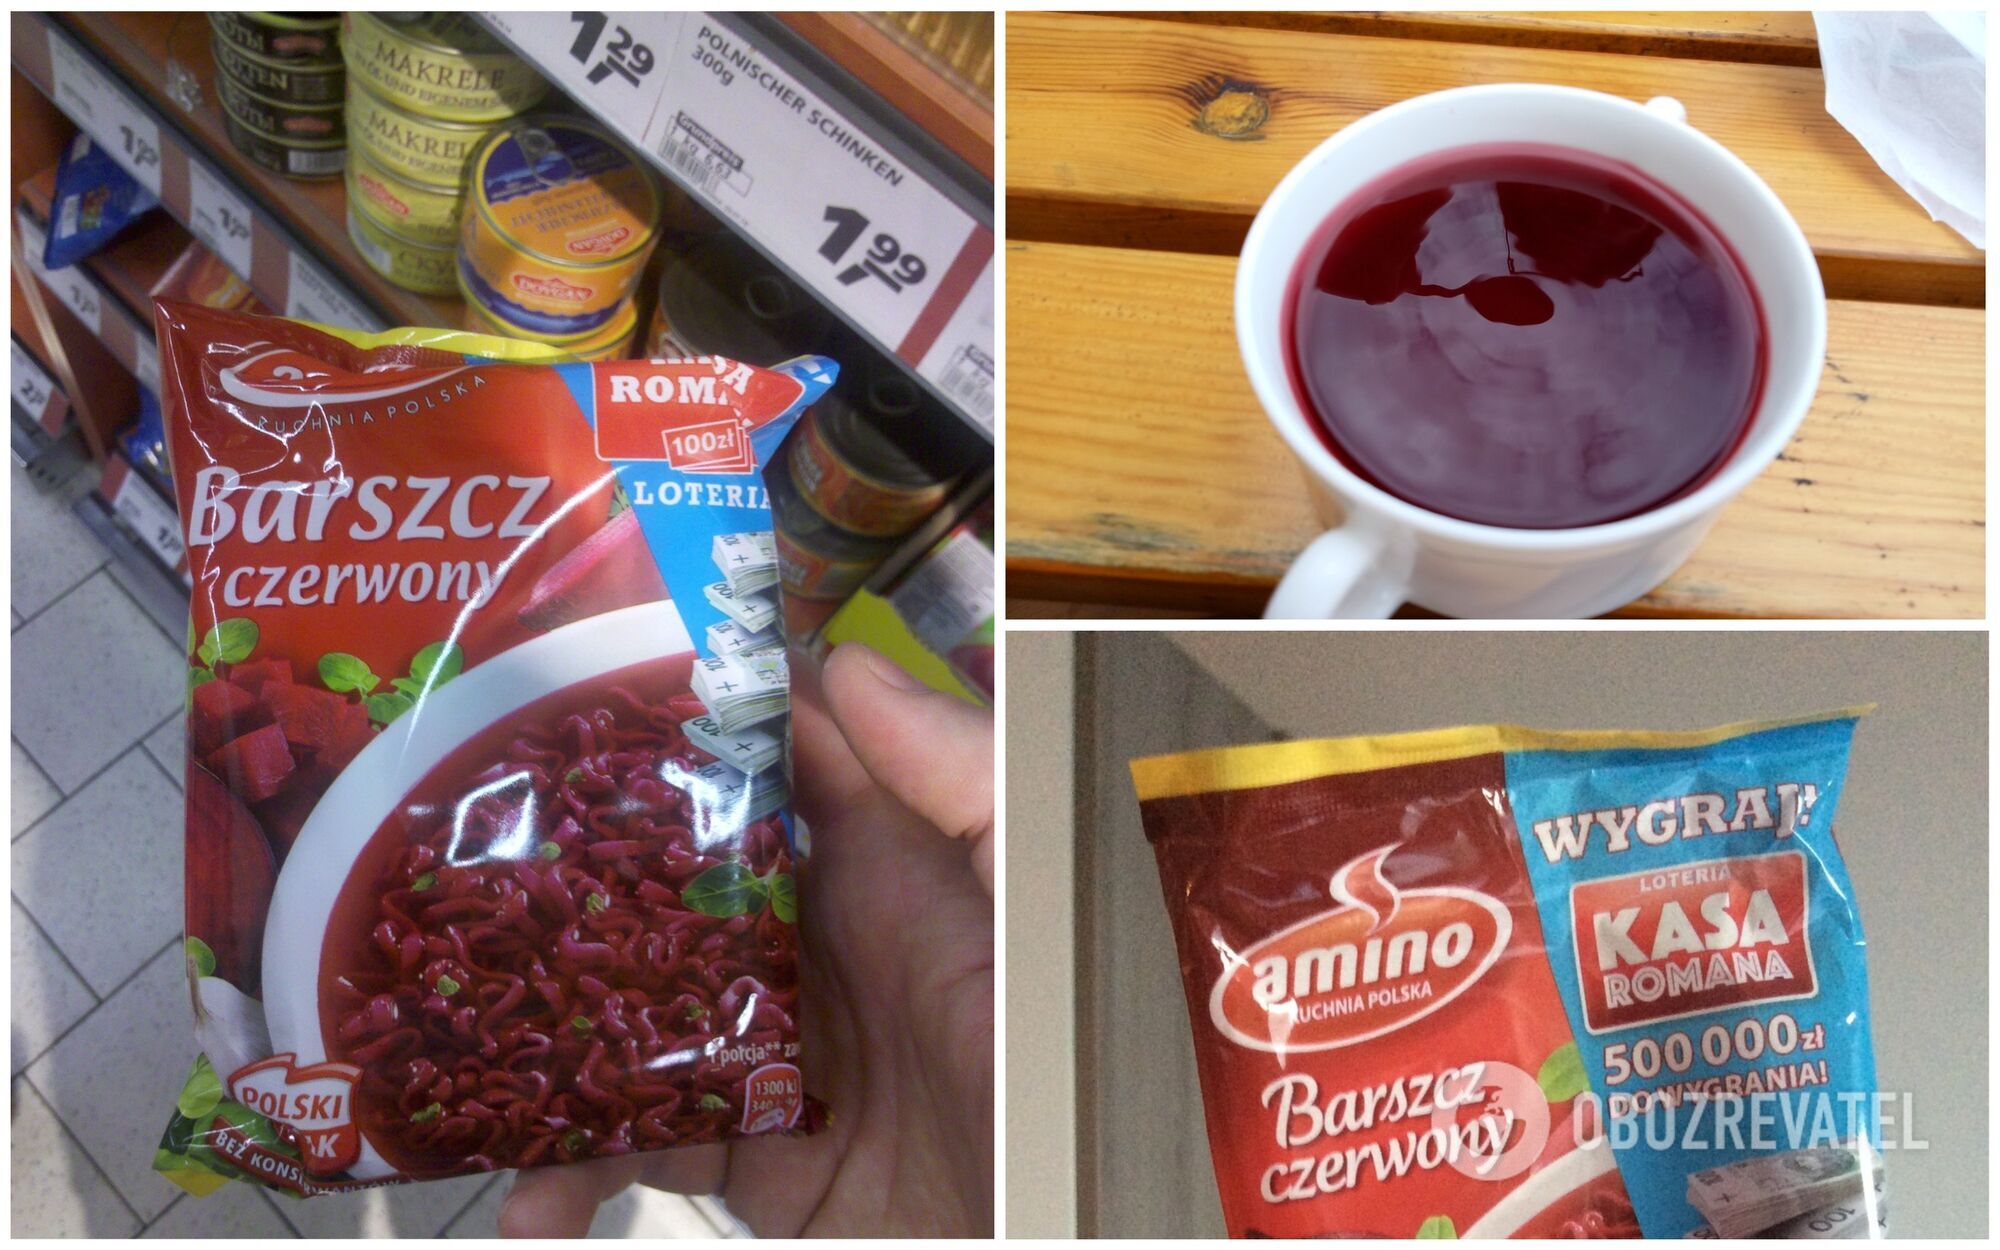 Польський український борщ виглядає як червона вода і продається в торгових автоматах